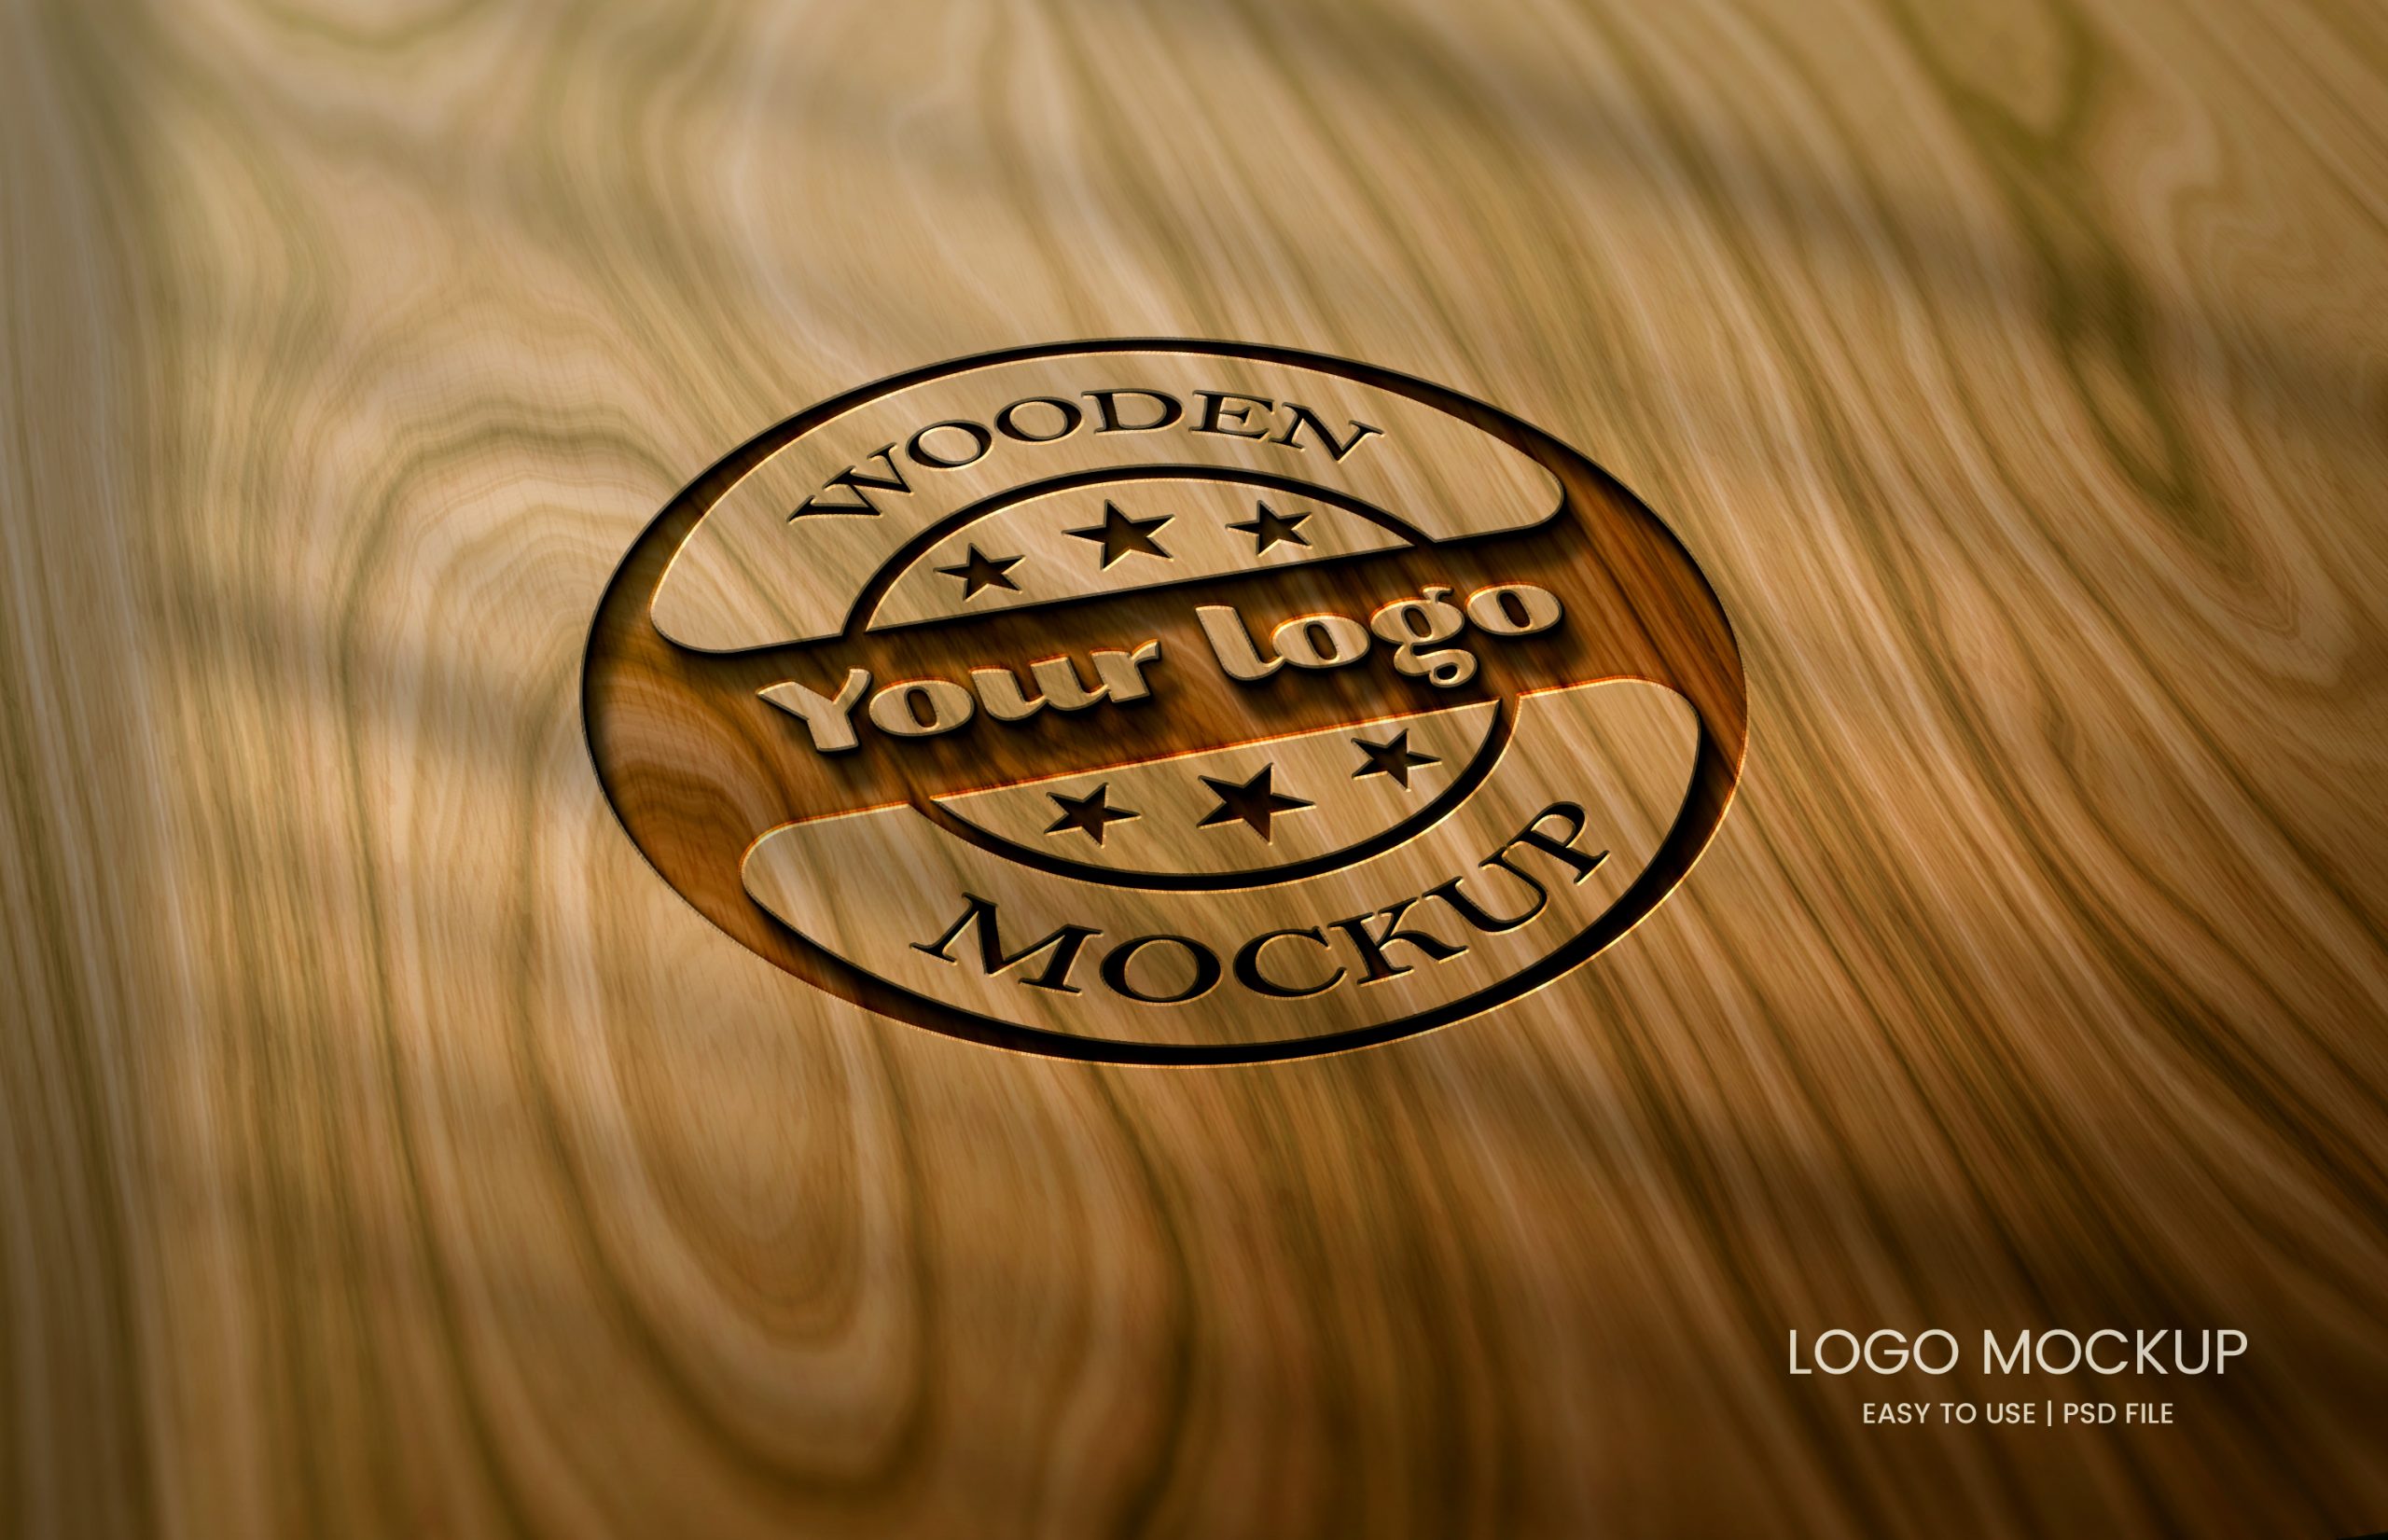 Mockup de logo en madera con efecto corte o grabado láser